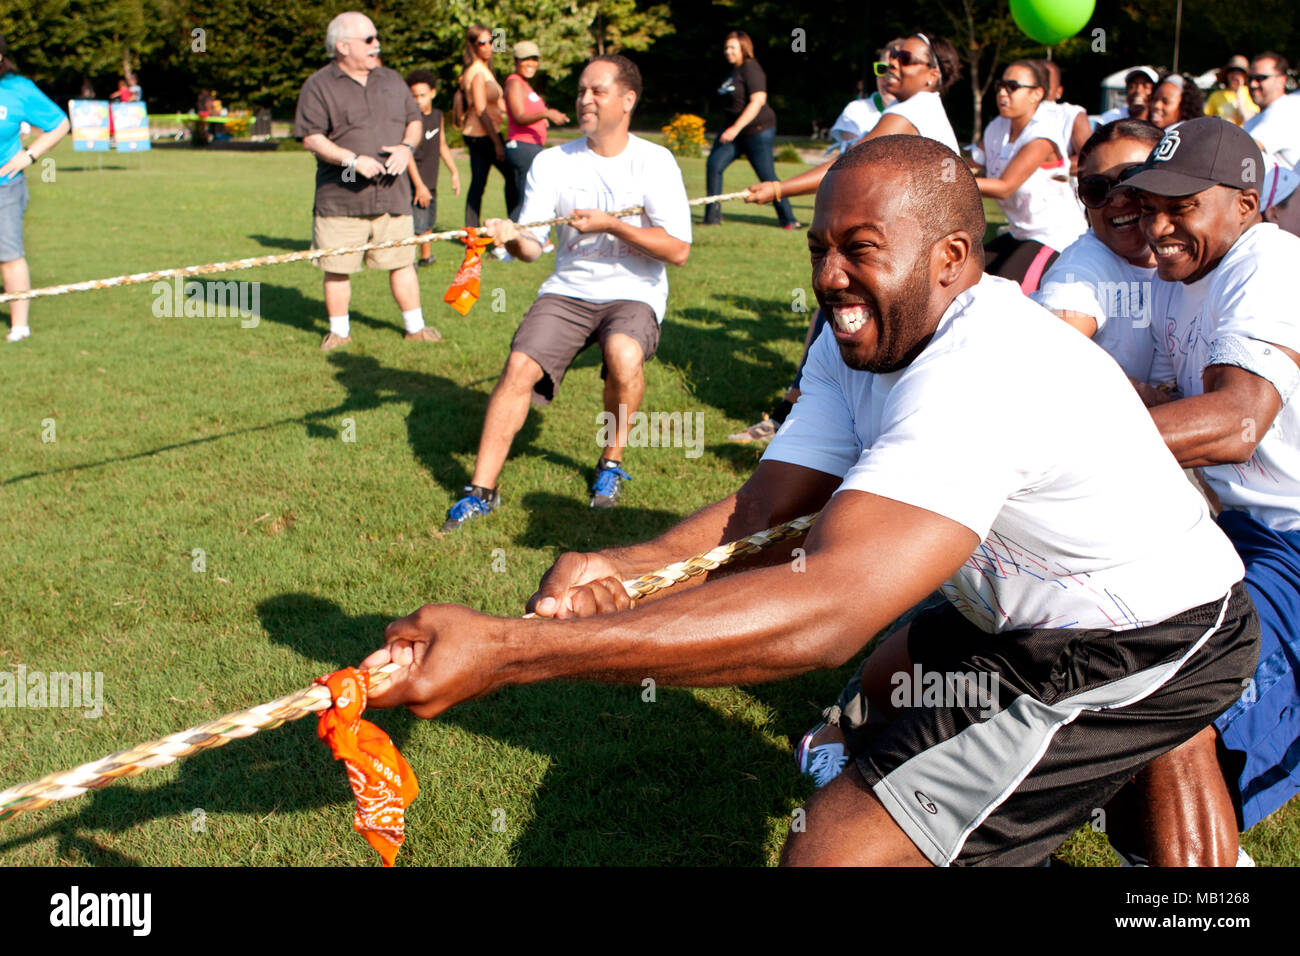 Equipes tirer fortement dans la lutte à la corde la concurrence à une journée pour les enfants, un événement où des adultes jouent à des jeux d'enfants pour des organismes de bienfaisance le 7 septembre 2013 à Atlanta, GA. Banque D'Images